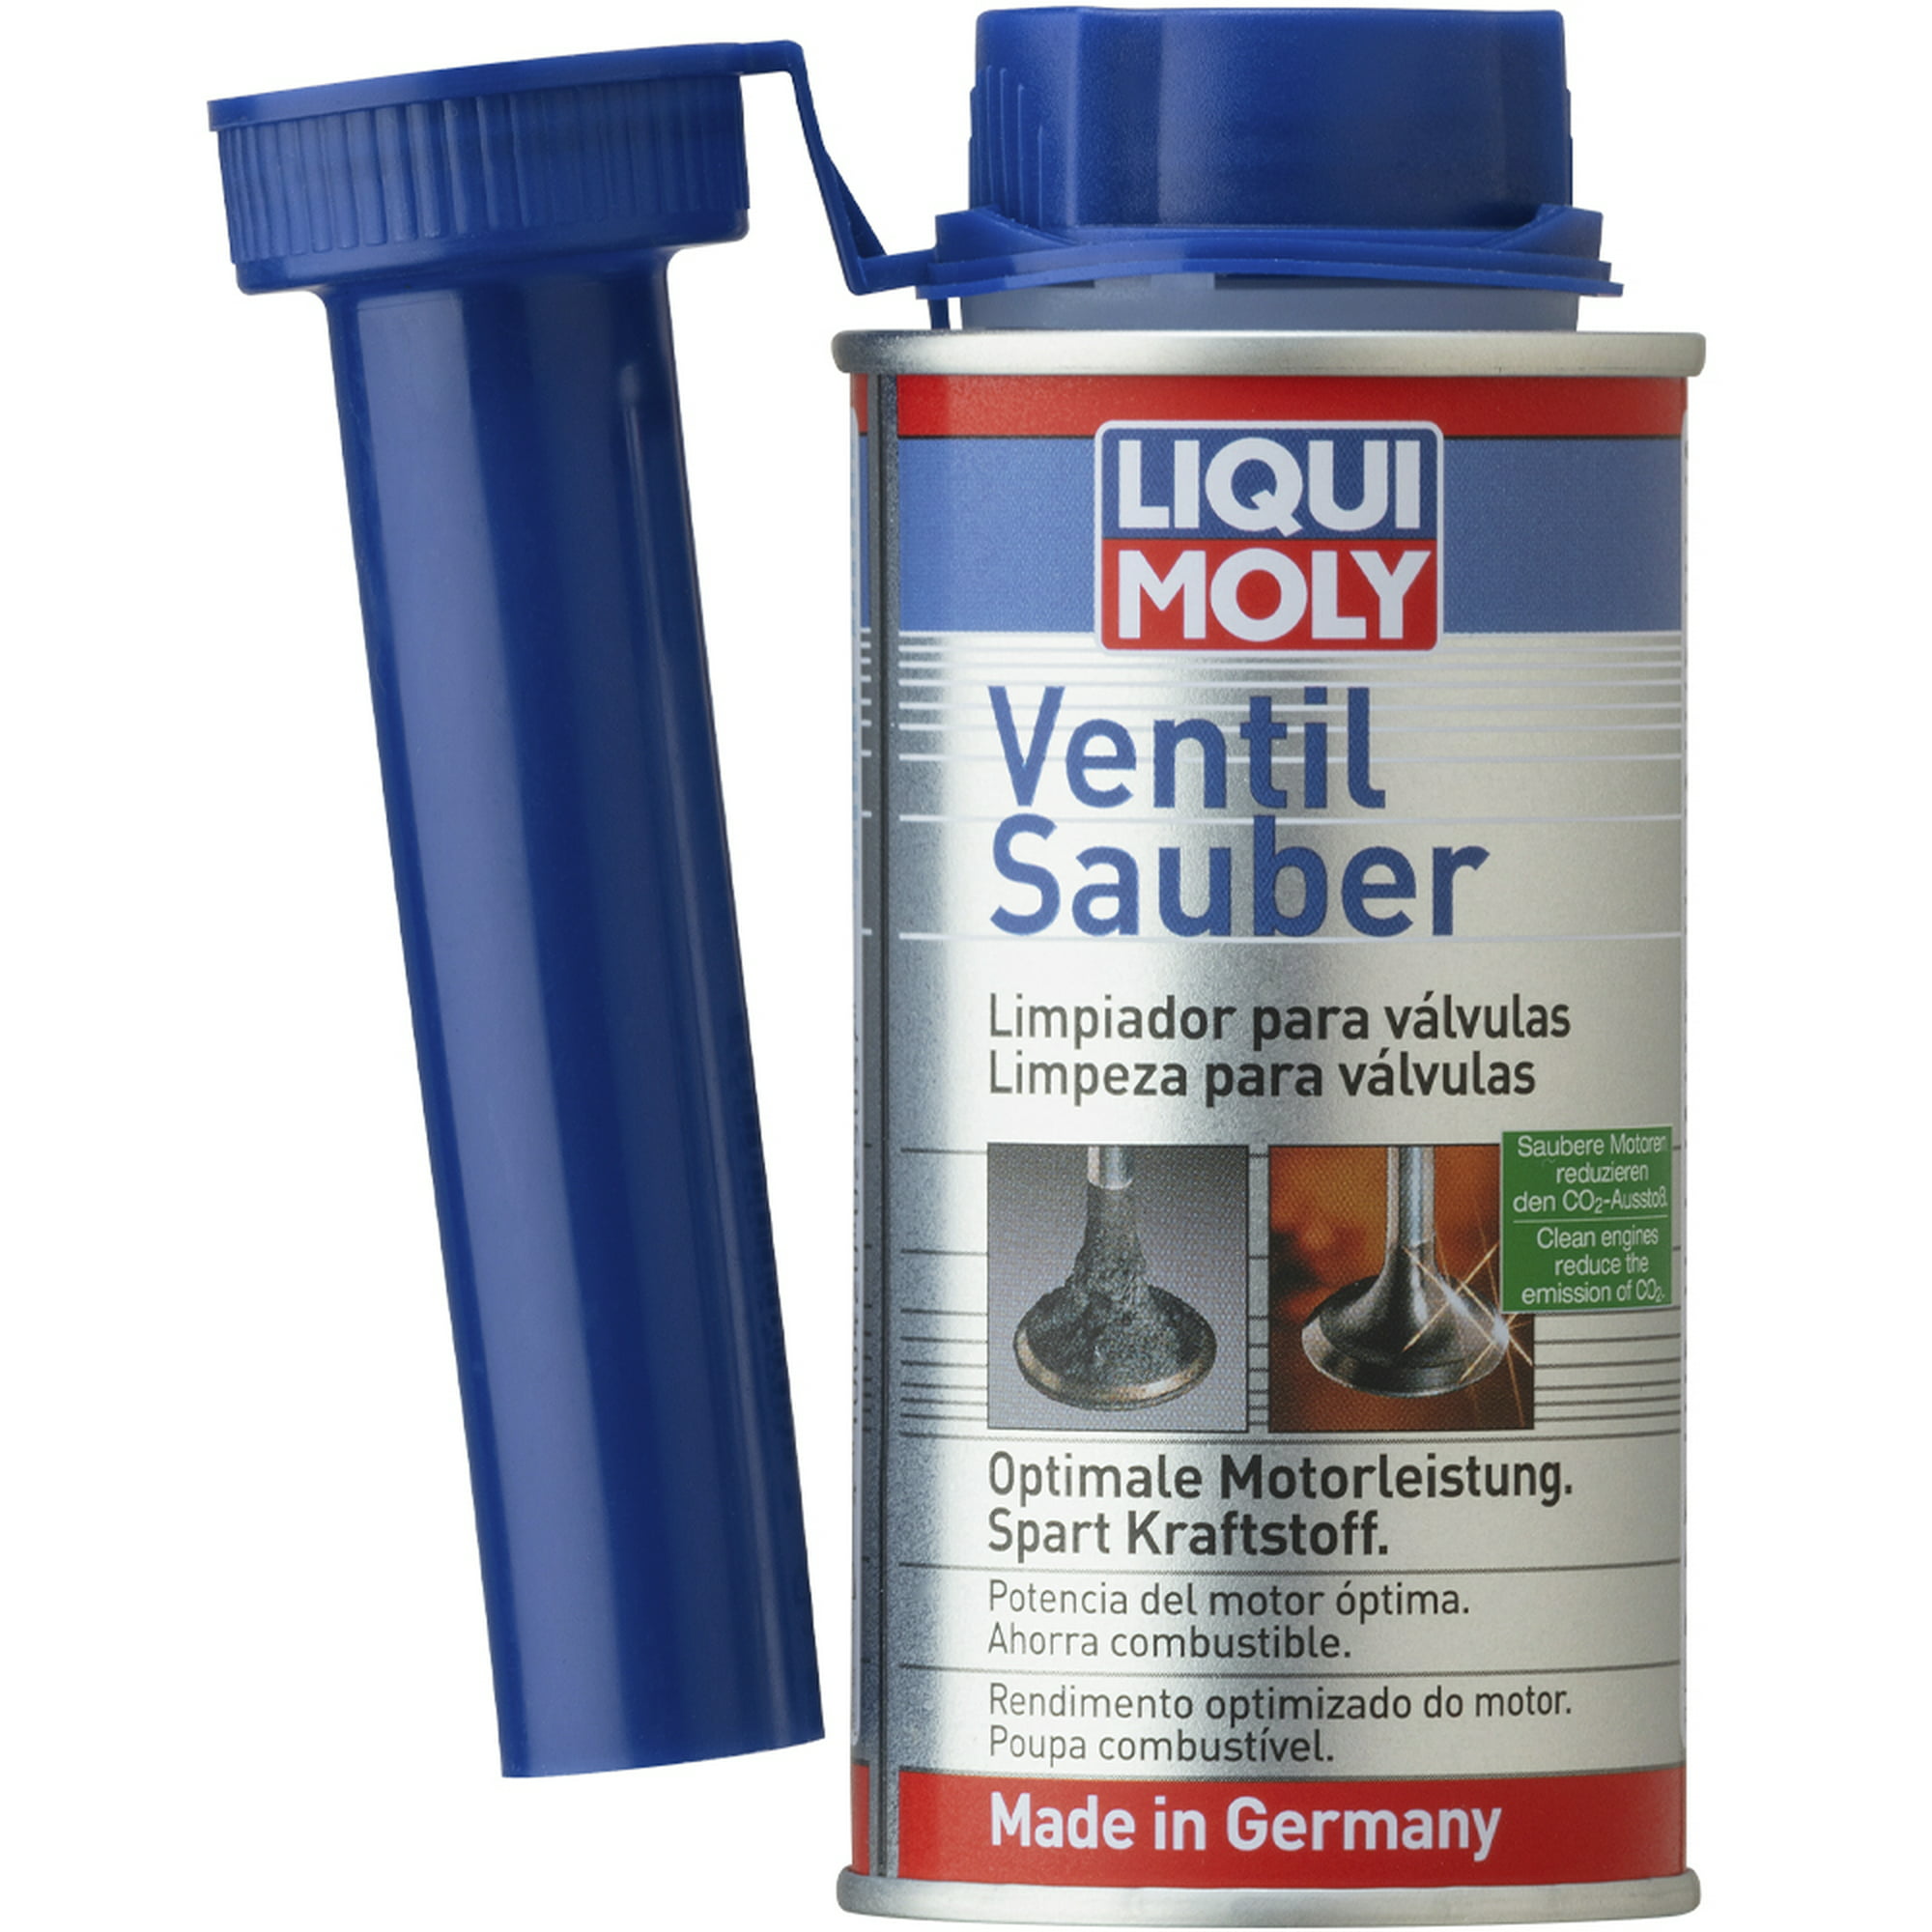 Ventil Sauber Tratamiento Limpiador De Inyectores Y Válvulas LIQUI MOLY .